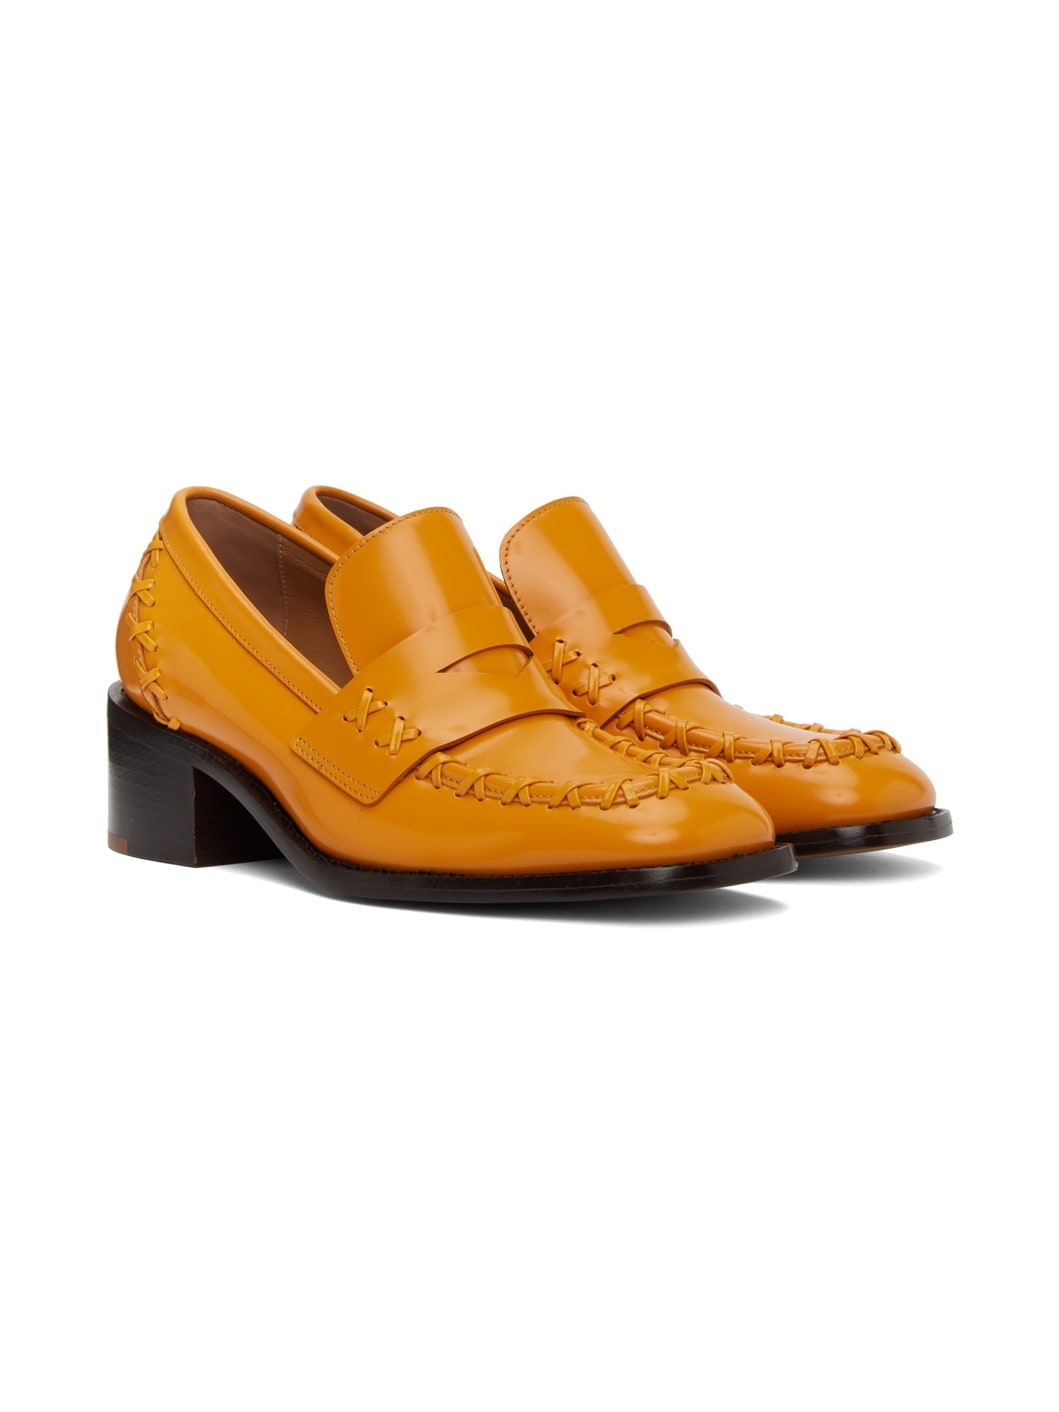 Orange Stitch Heels - 4